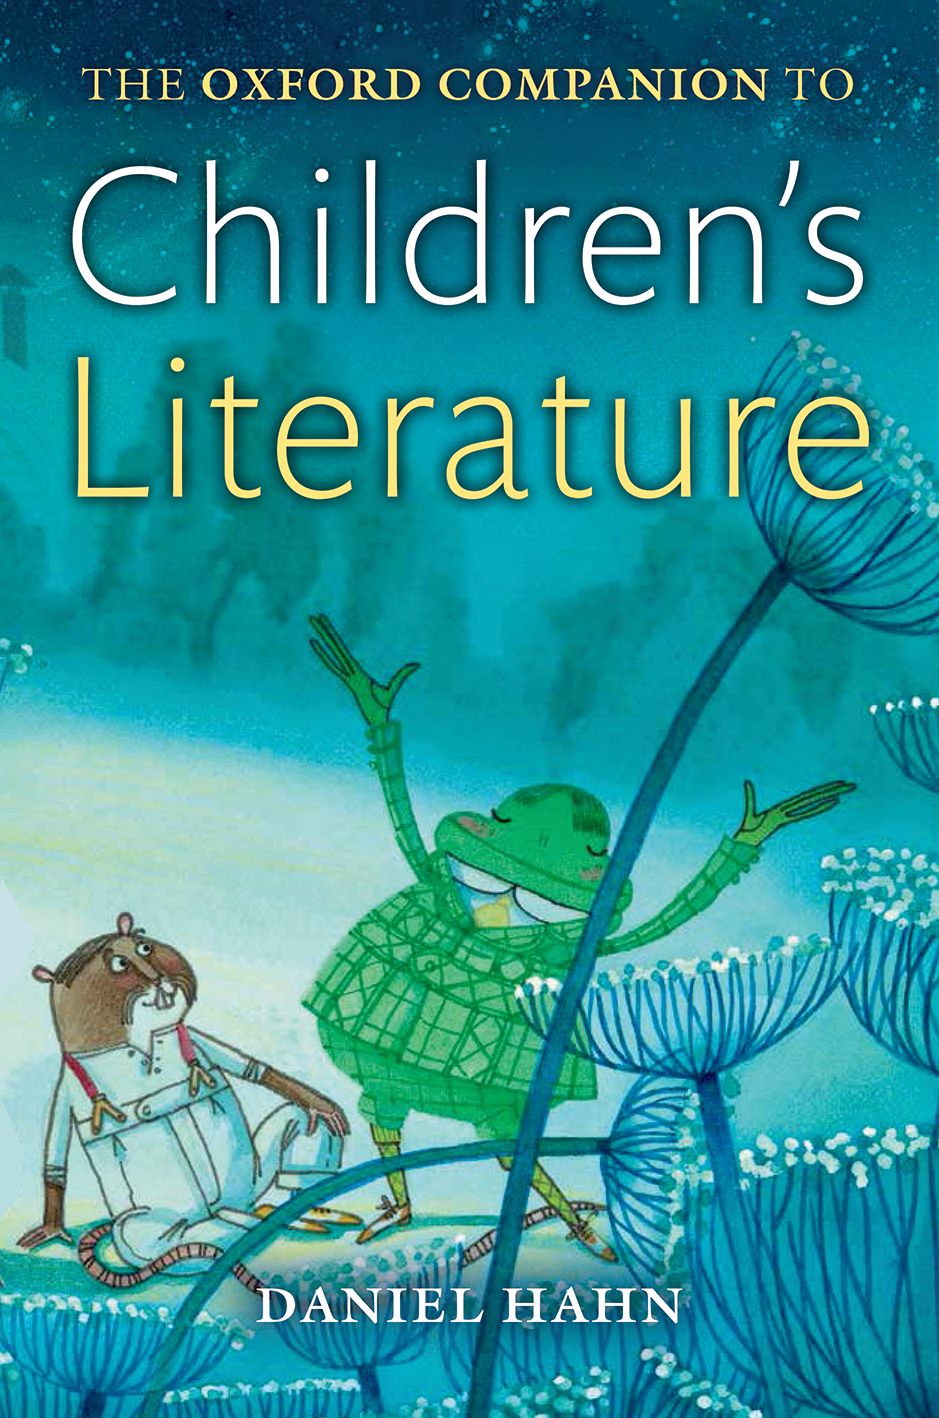 BOOK REVIEW: The Oxford Companion to Children’s Literature